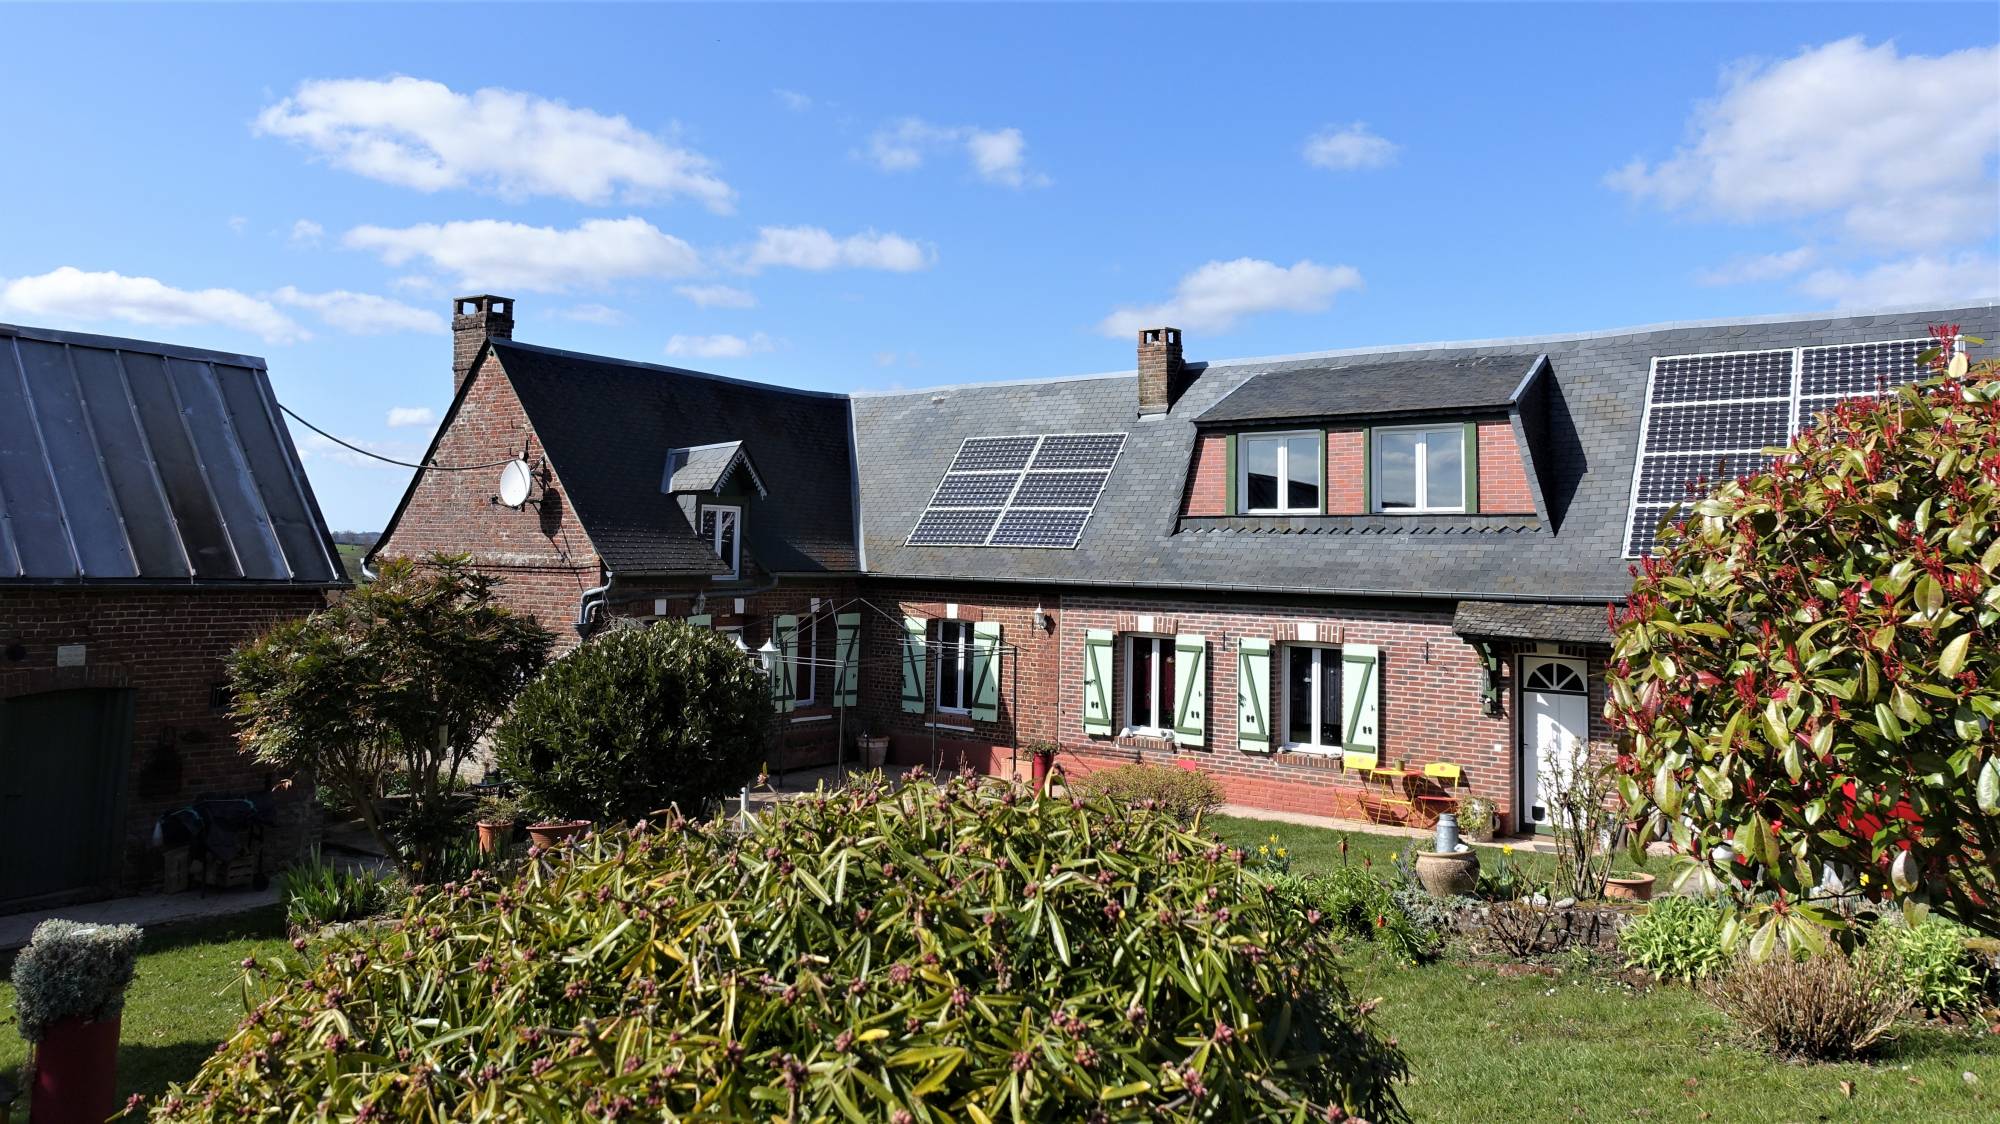 A vendre belle maison de campagne d'environ 110 m² habitables, 4 chambres, à deux pas de Blangy/Bresle 76340 et de l'A28 ( Baie de Somme )